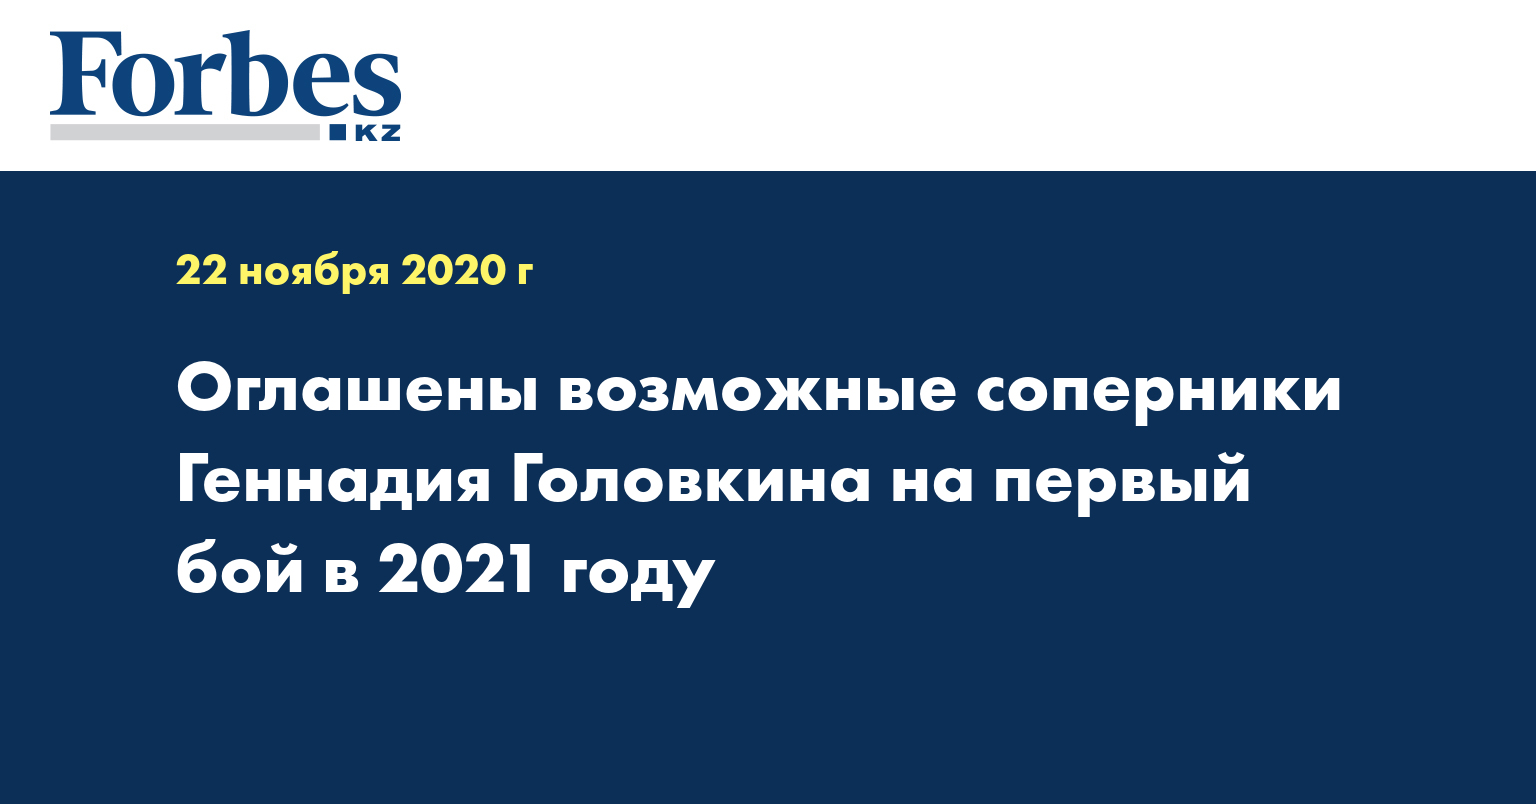 Оглашены возможные соперники Геннадия Головкина на первый бой в 2021 году